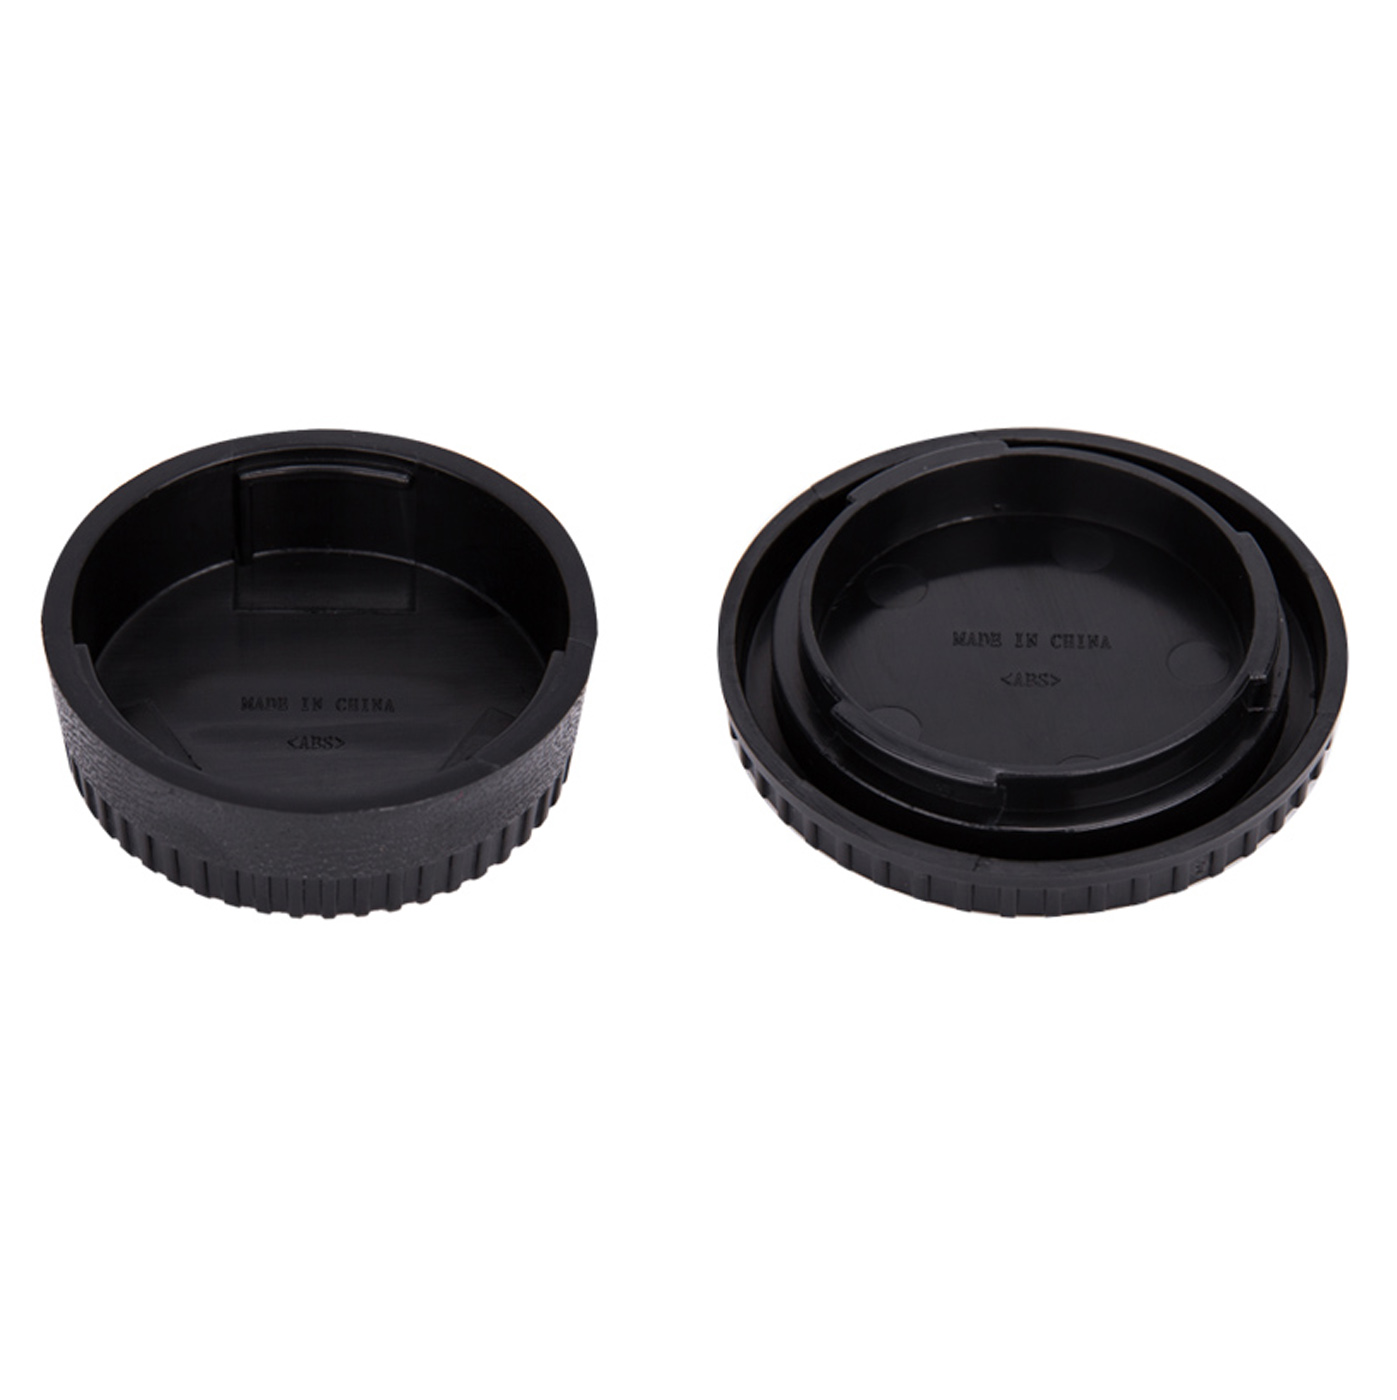 VBESTLIFE Objektivdeckel 5 Packung Objektivdeckel für alle Nikon F-Mount-Spiegelreflexkameras. 